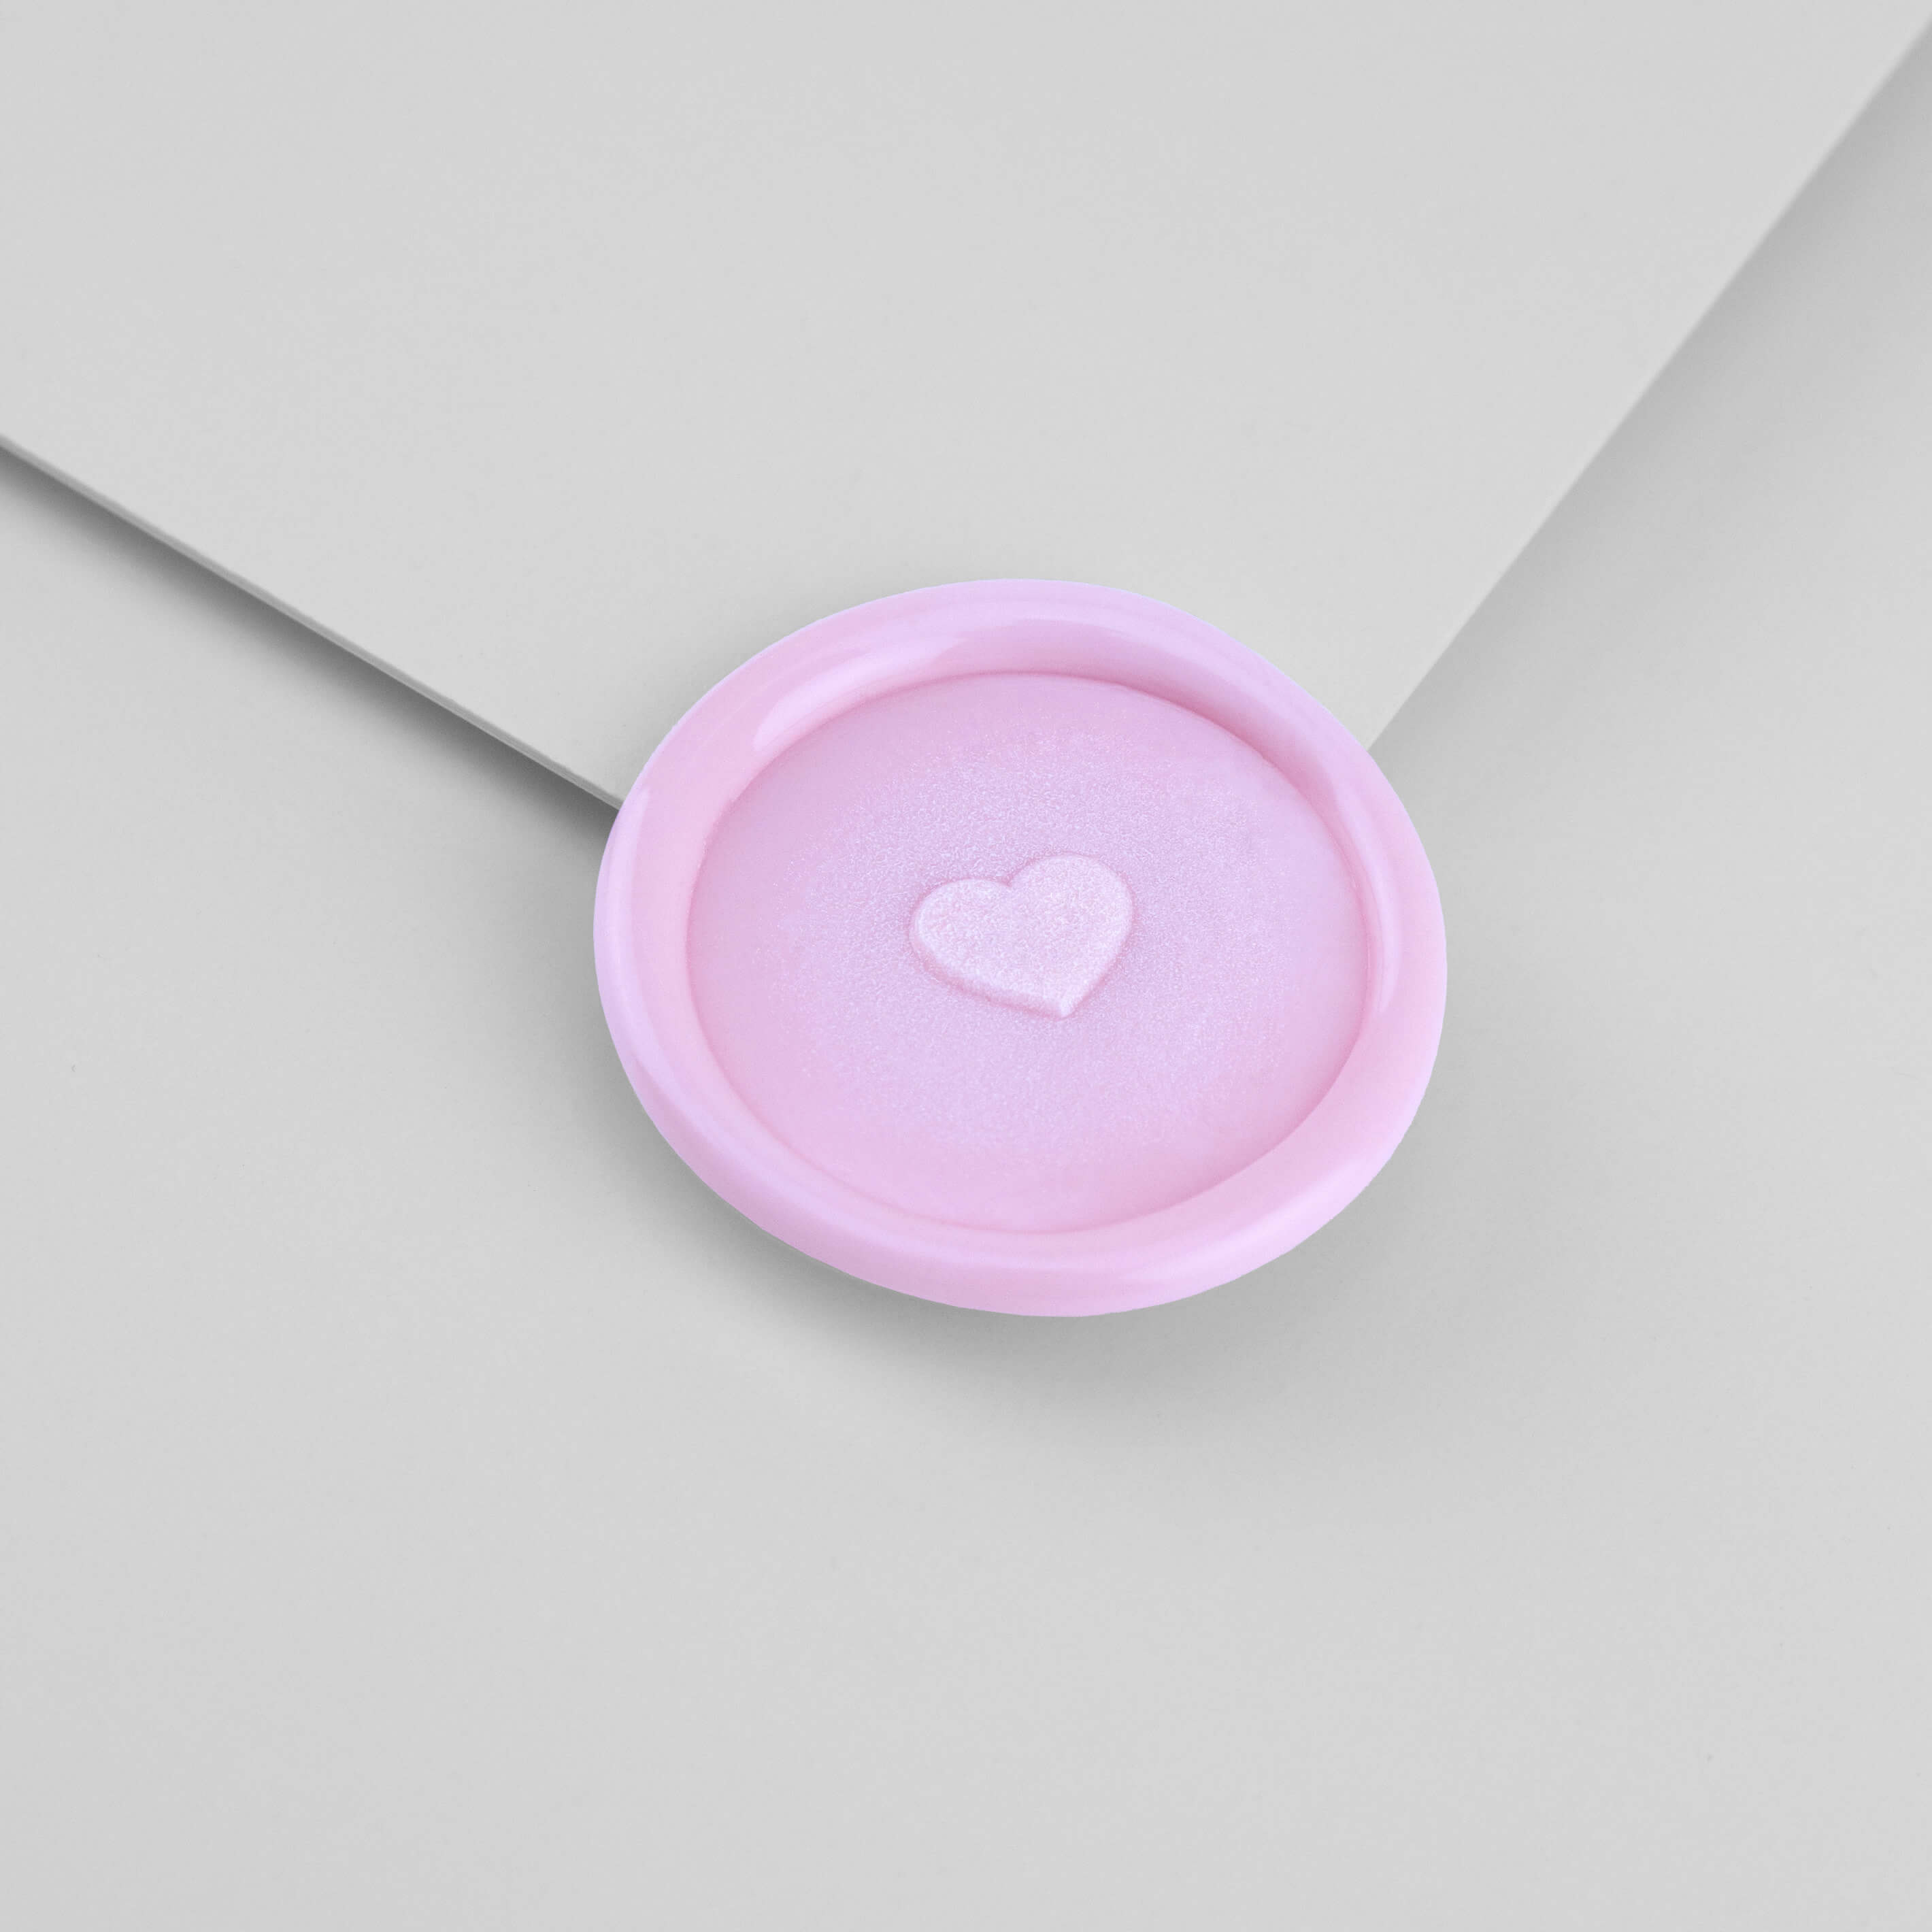 Kustom Haus - Wax Seal Stamp - Tiny Heart